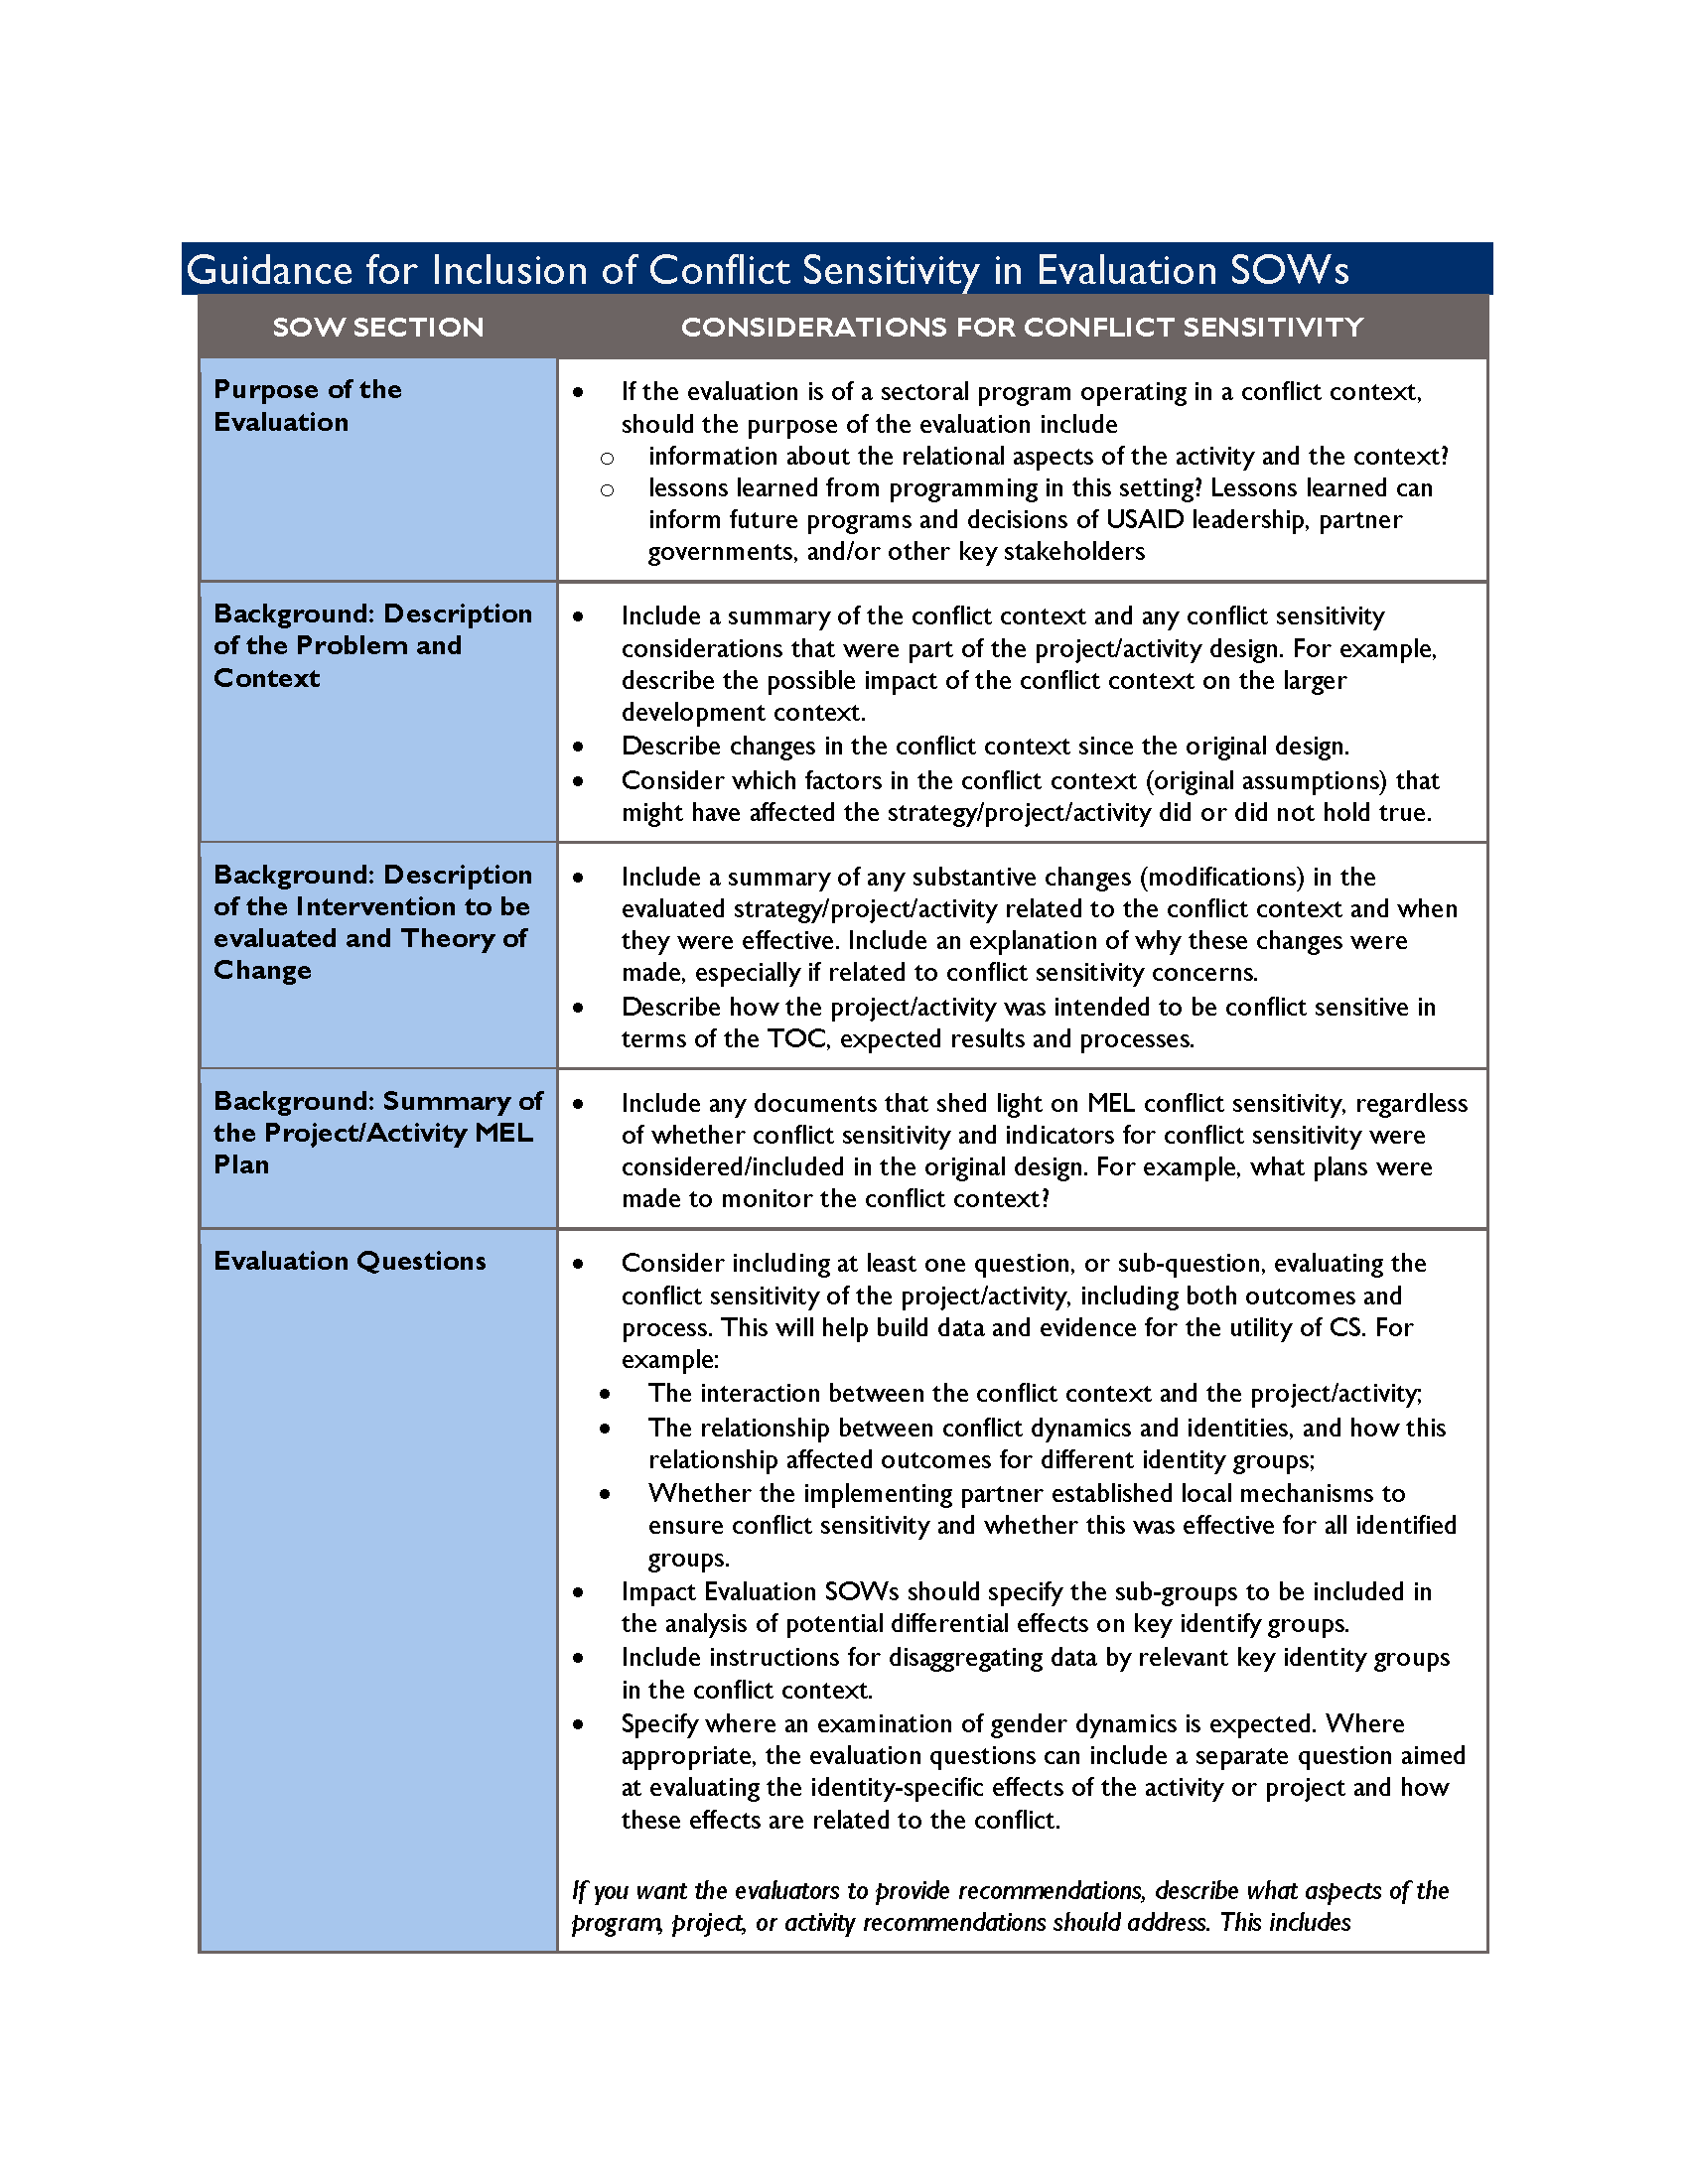 Page de couverture des lignes directrices pour l'inclusion de la sensibilité aux conflits dans les énoncés des travaux d'évaluation